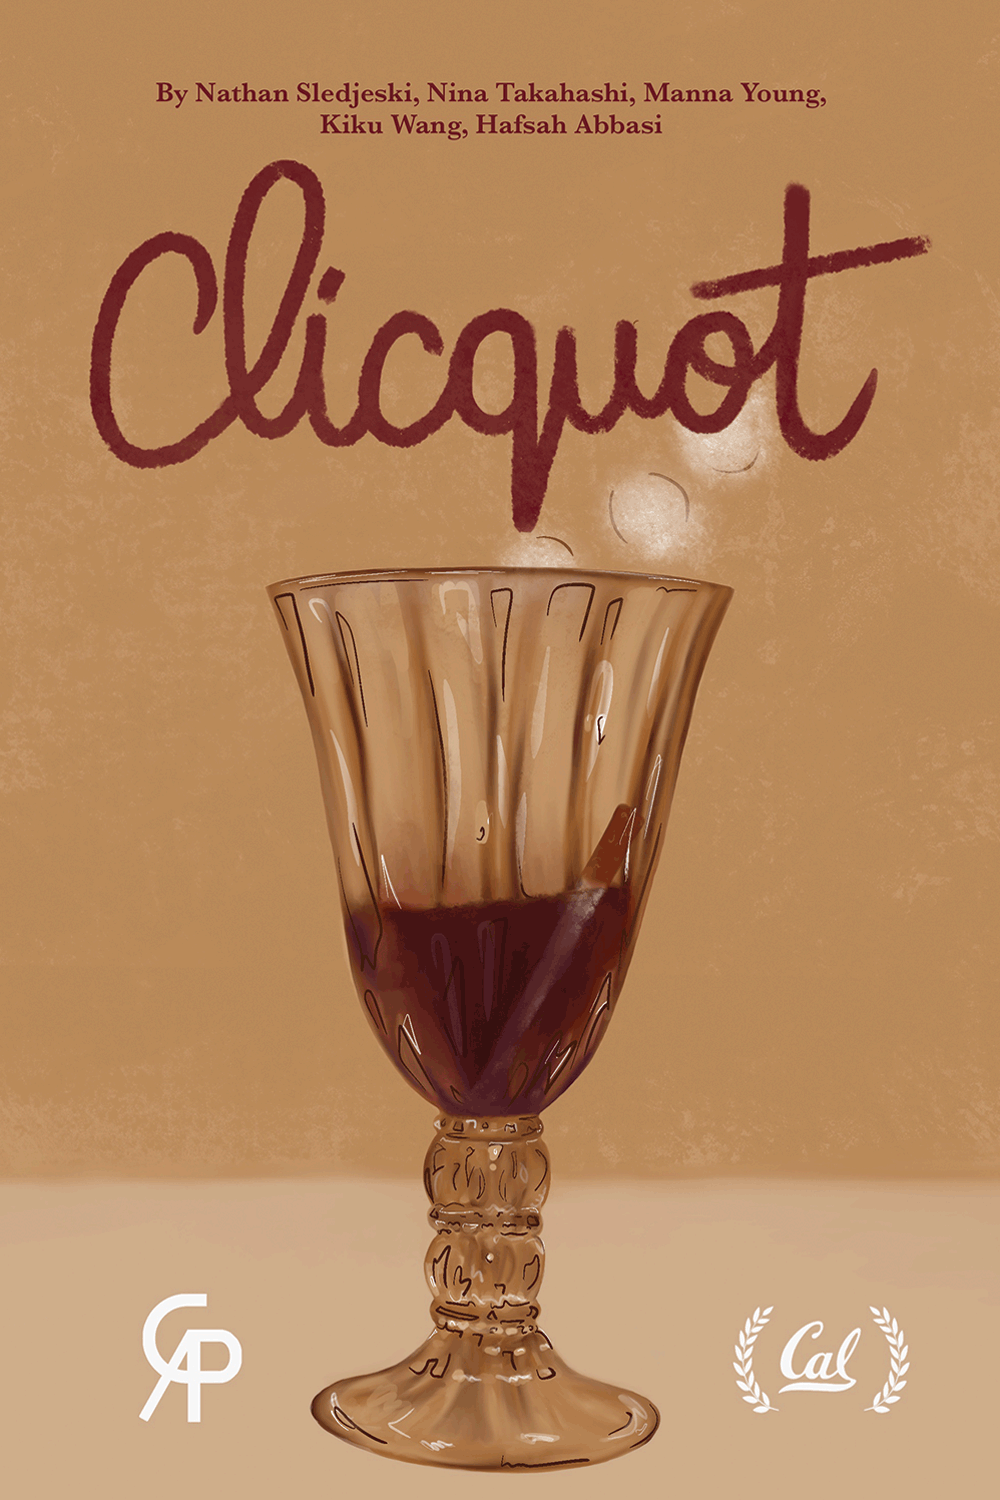 Clicquot